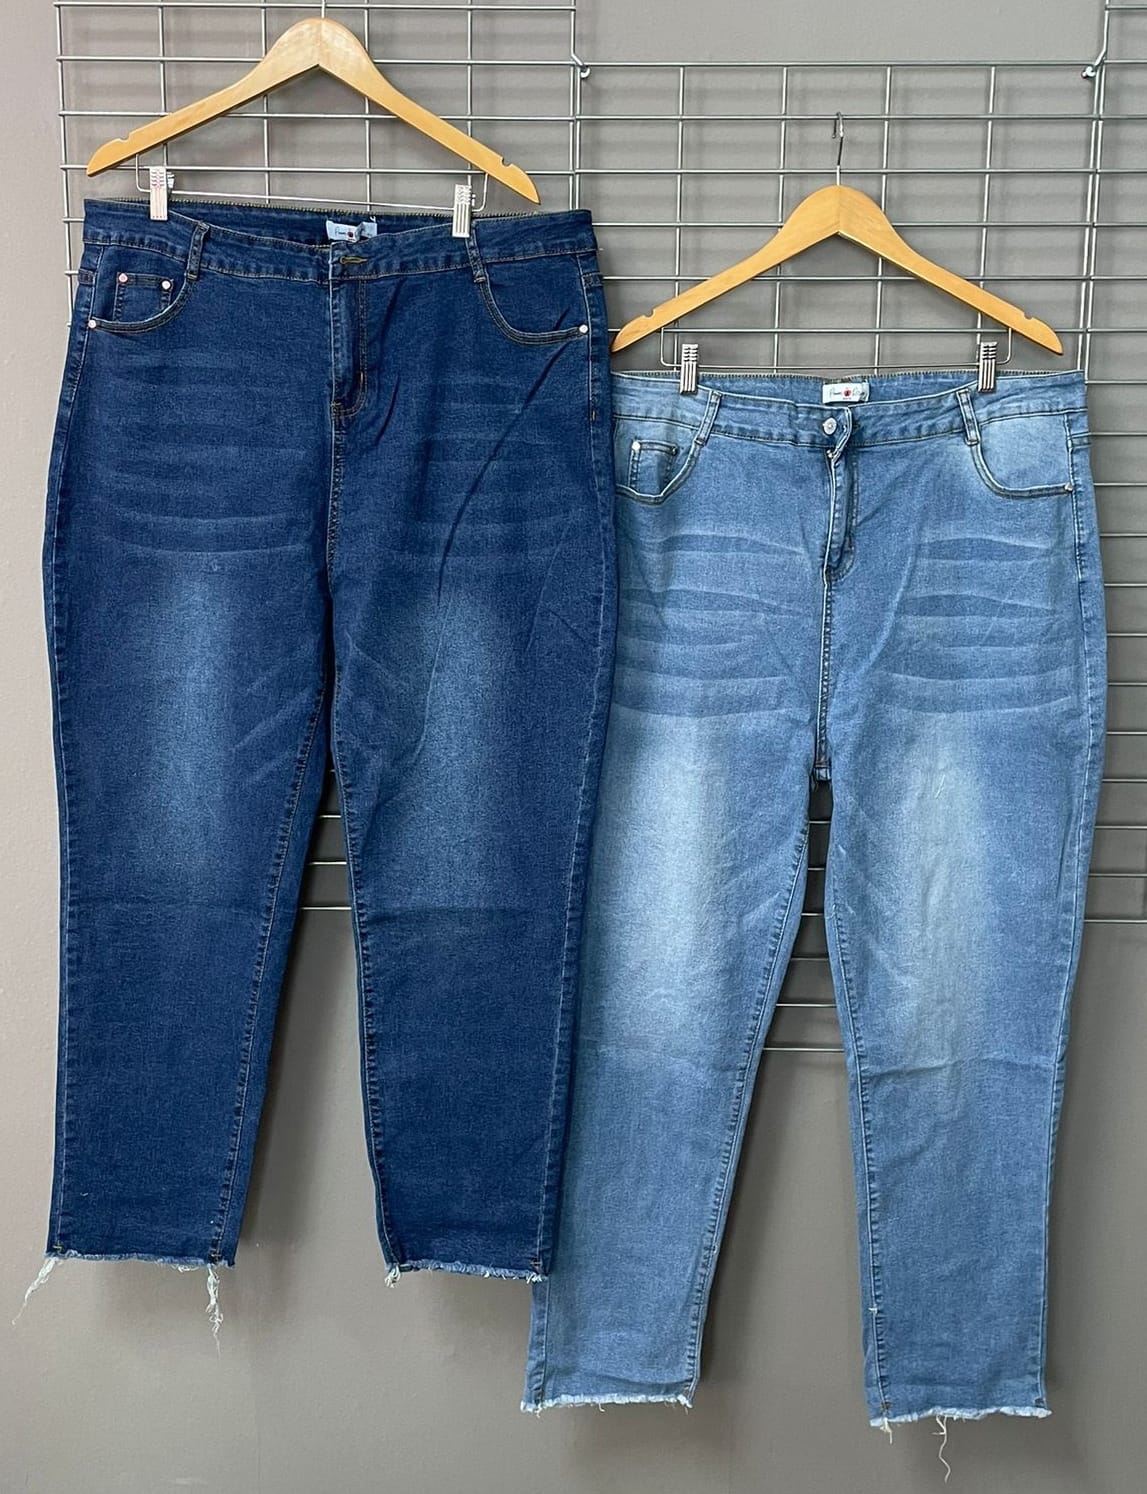 Gr. 48 - 54 Jeans Hose